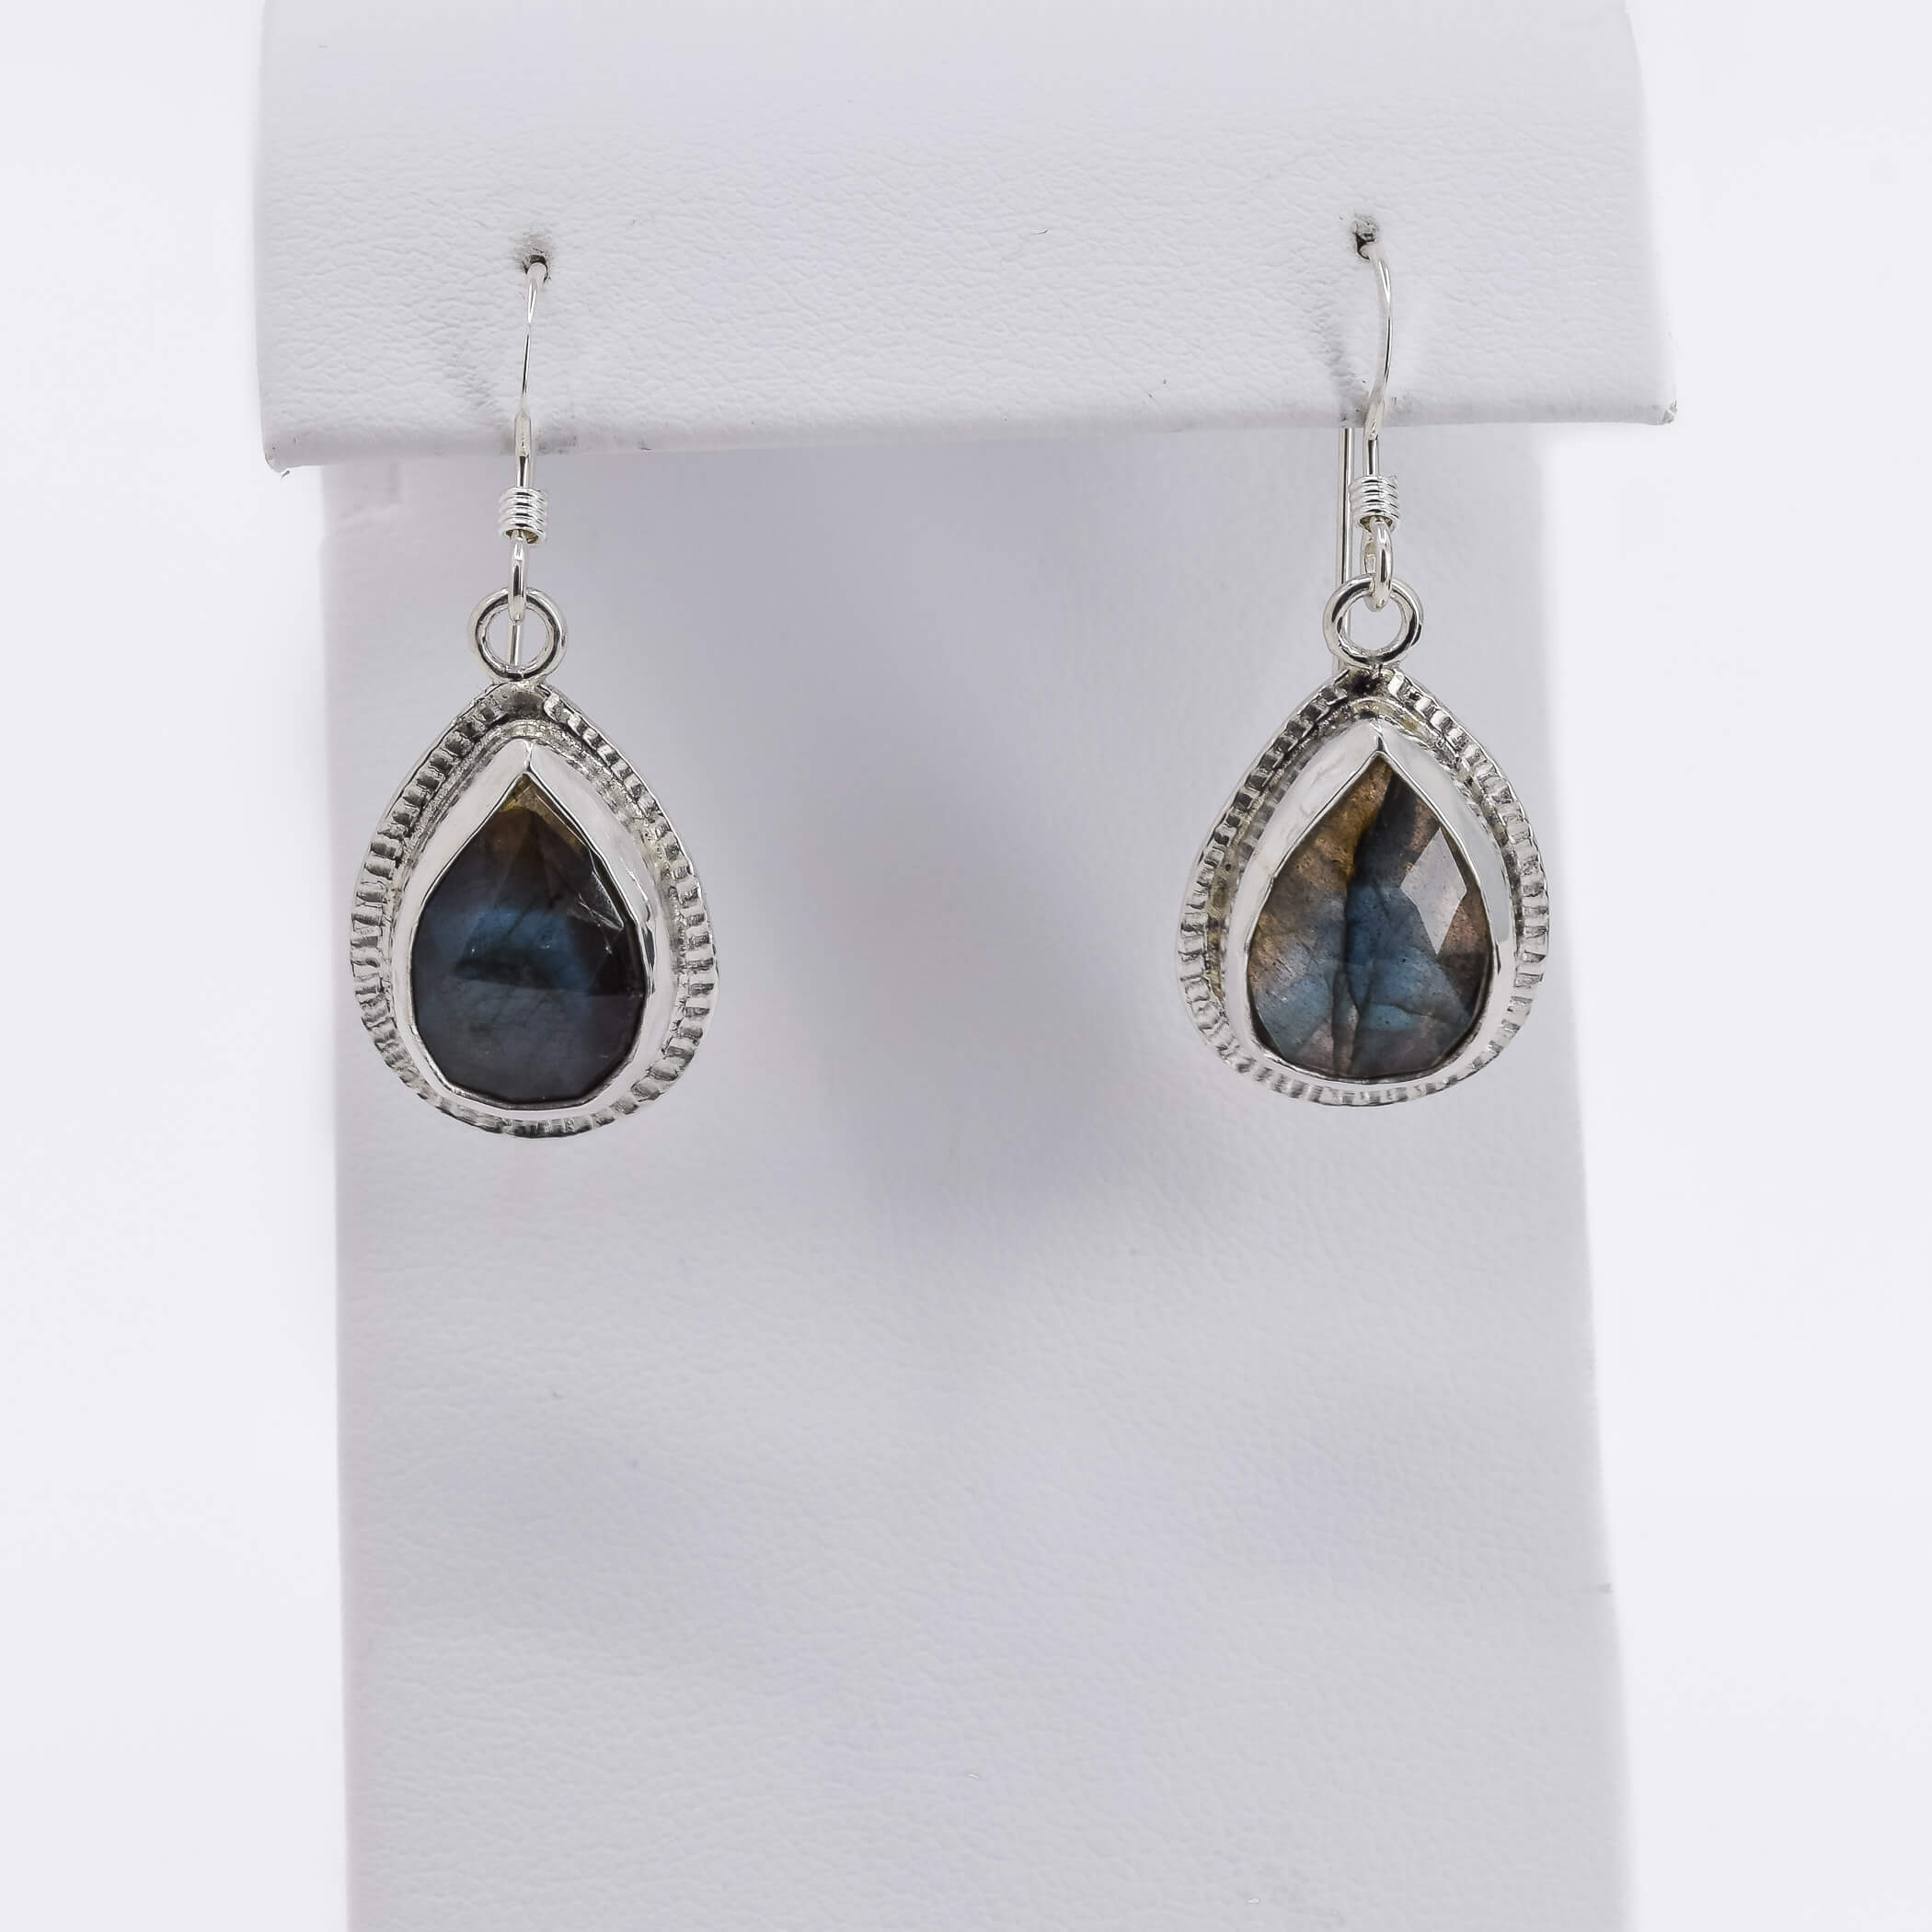 teardrop shaped labradorite drop earrings set in sterling silver 